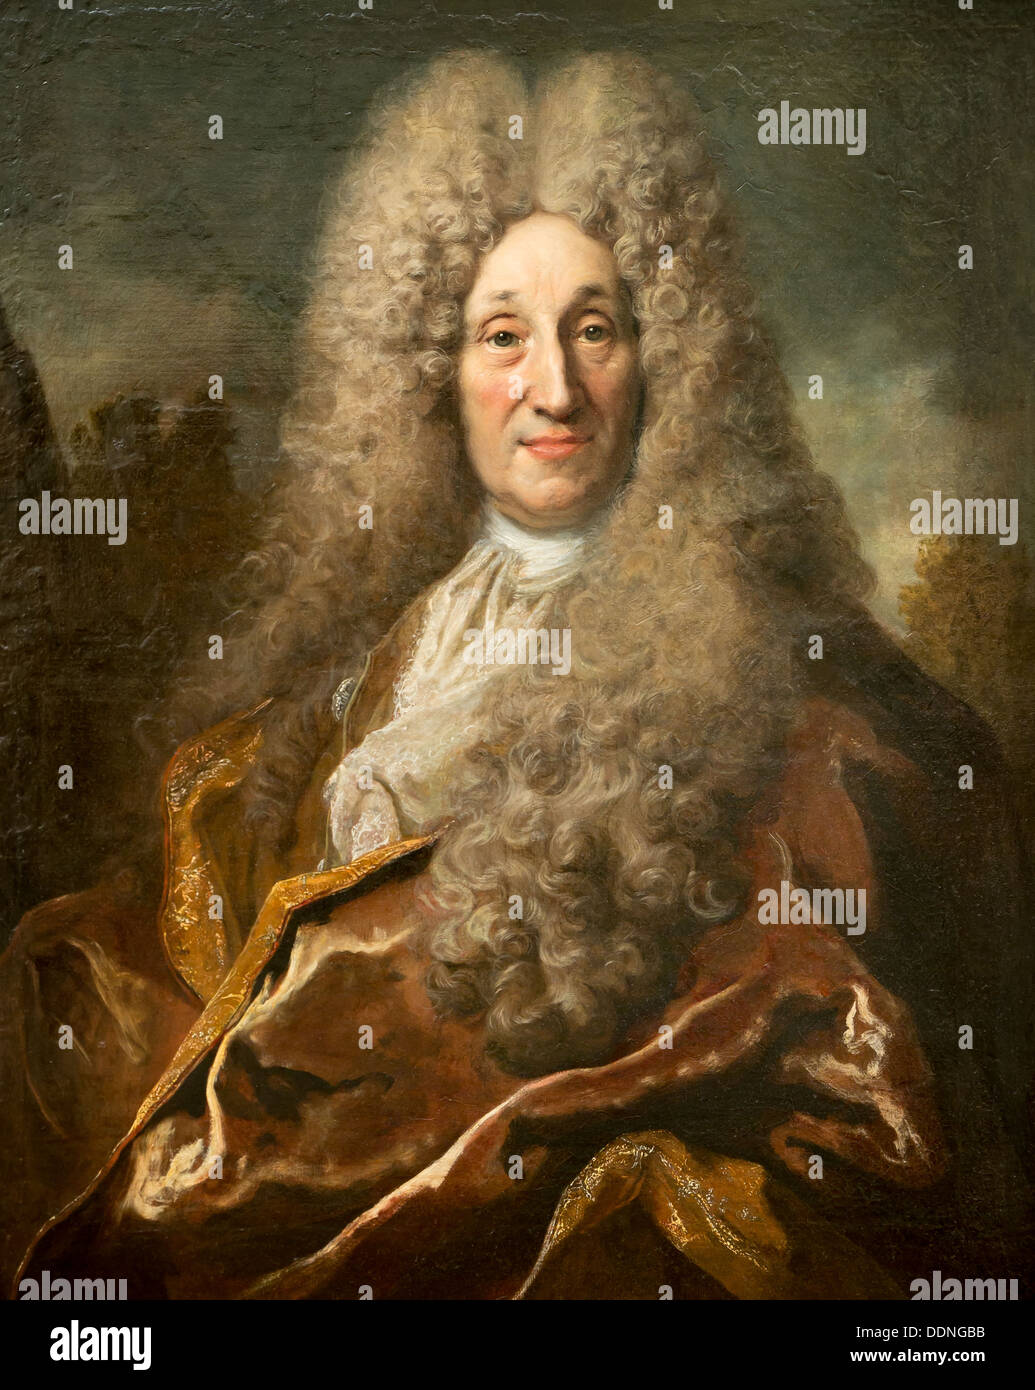 18th century  -  Portrait of Jean Pupil de Craponne, 1708 - Nicolas de Largillierre Oil on canvas Stock Photo